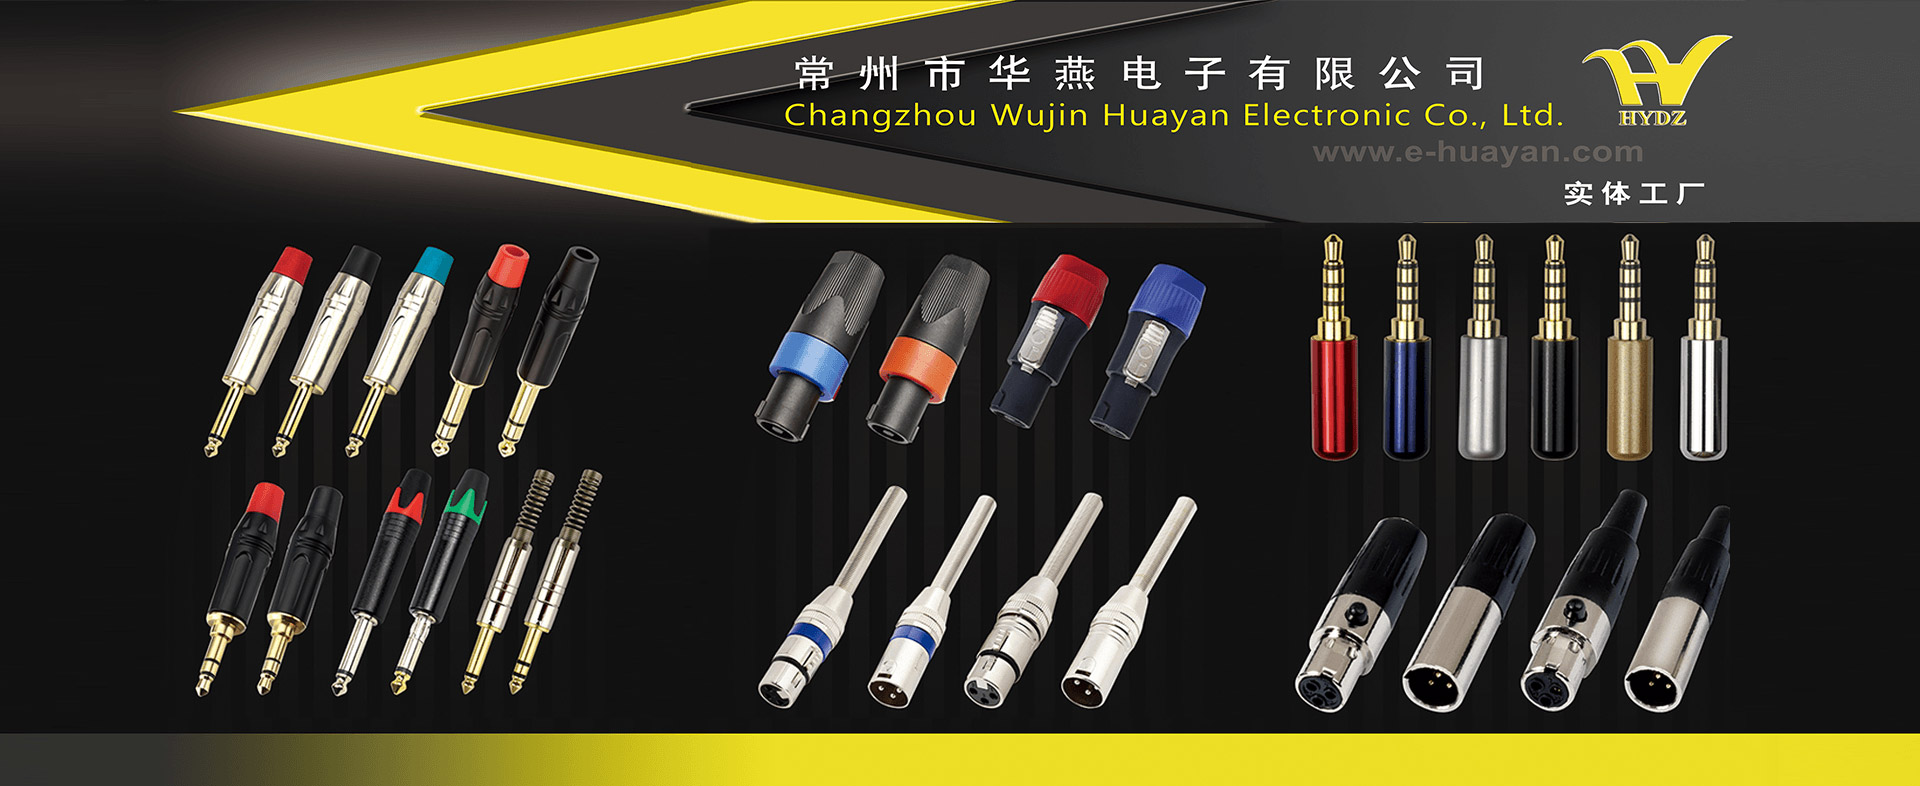 Changzhou Wujin Huayan Electronic Co., LTD